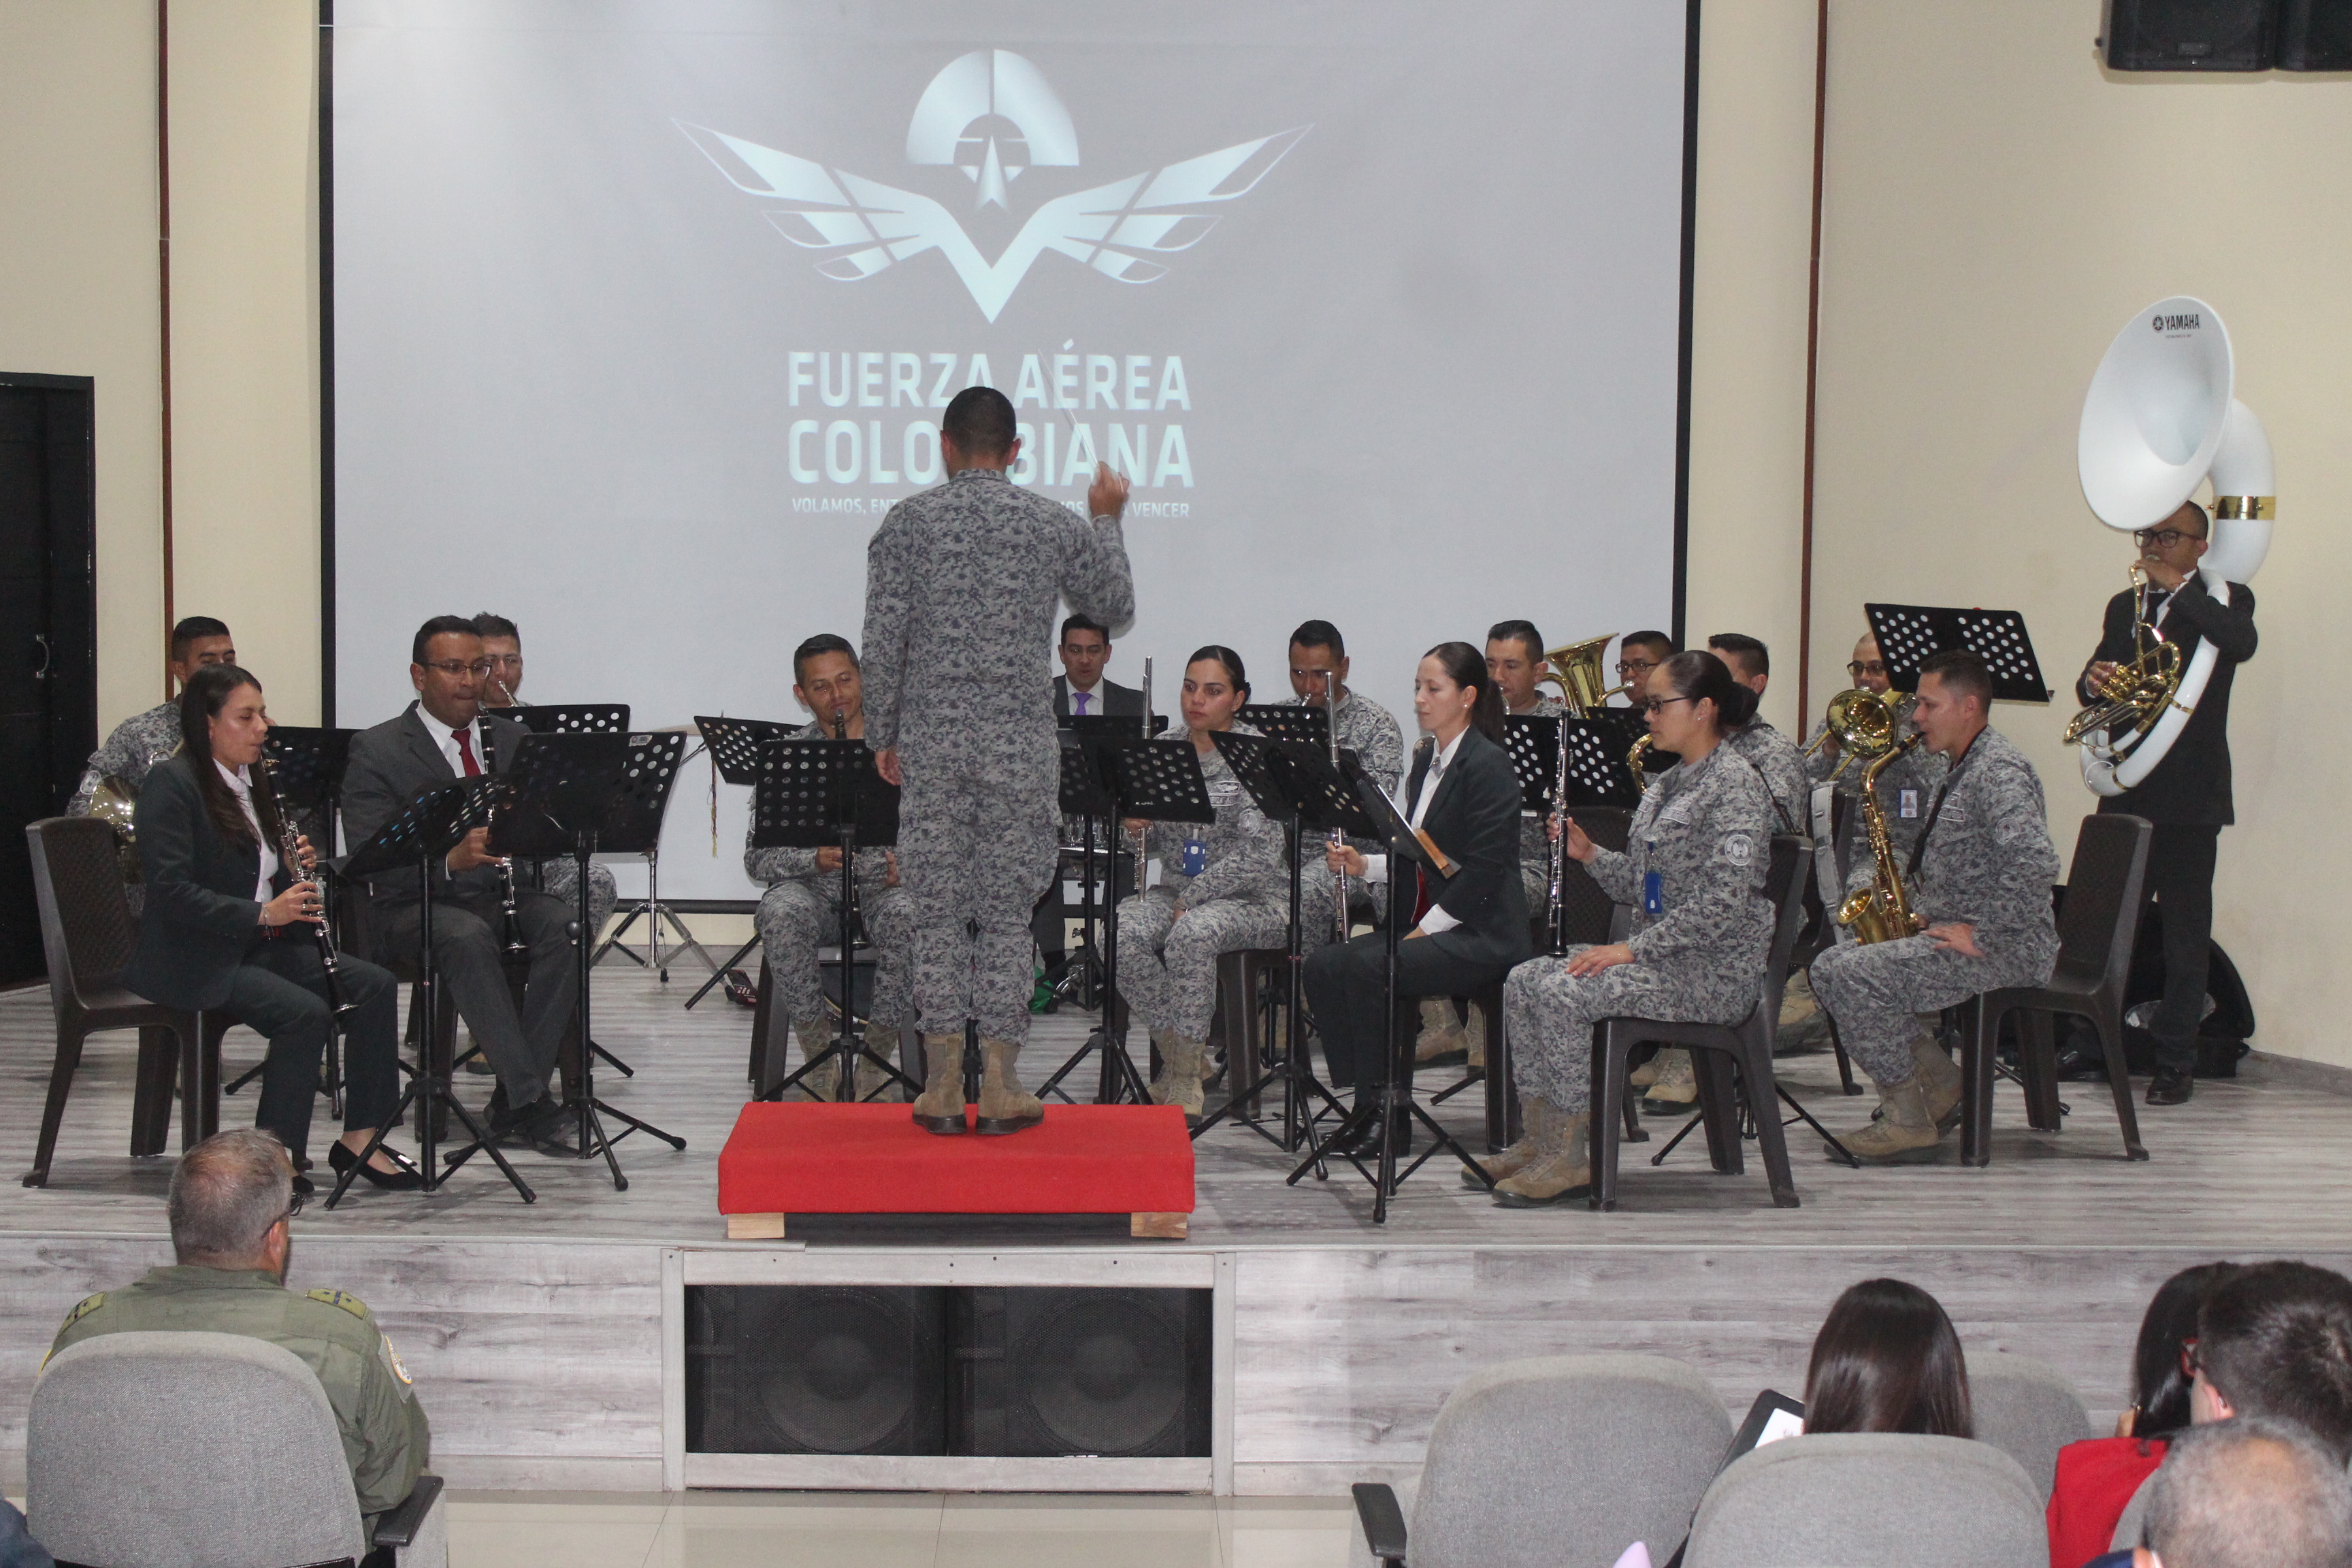 Periodistas de Cundinamarca conmemoraron su día en la Escuela de Suboficiales de la Fuerza Aérea